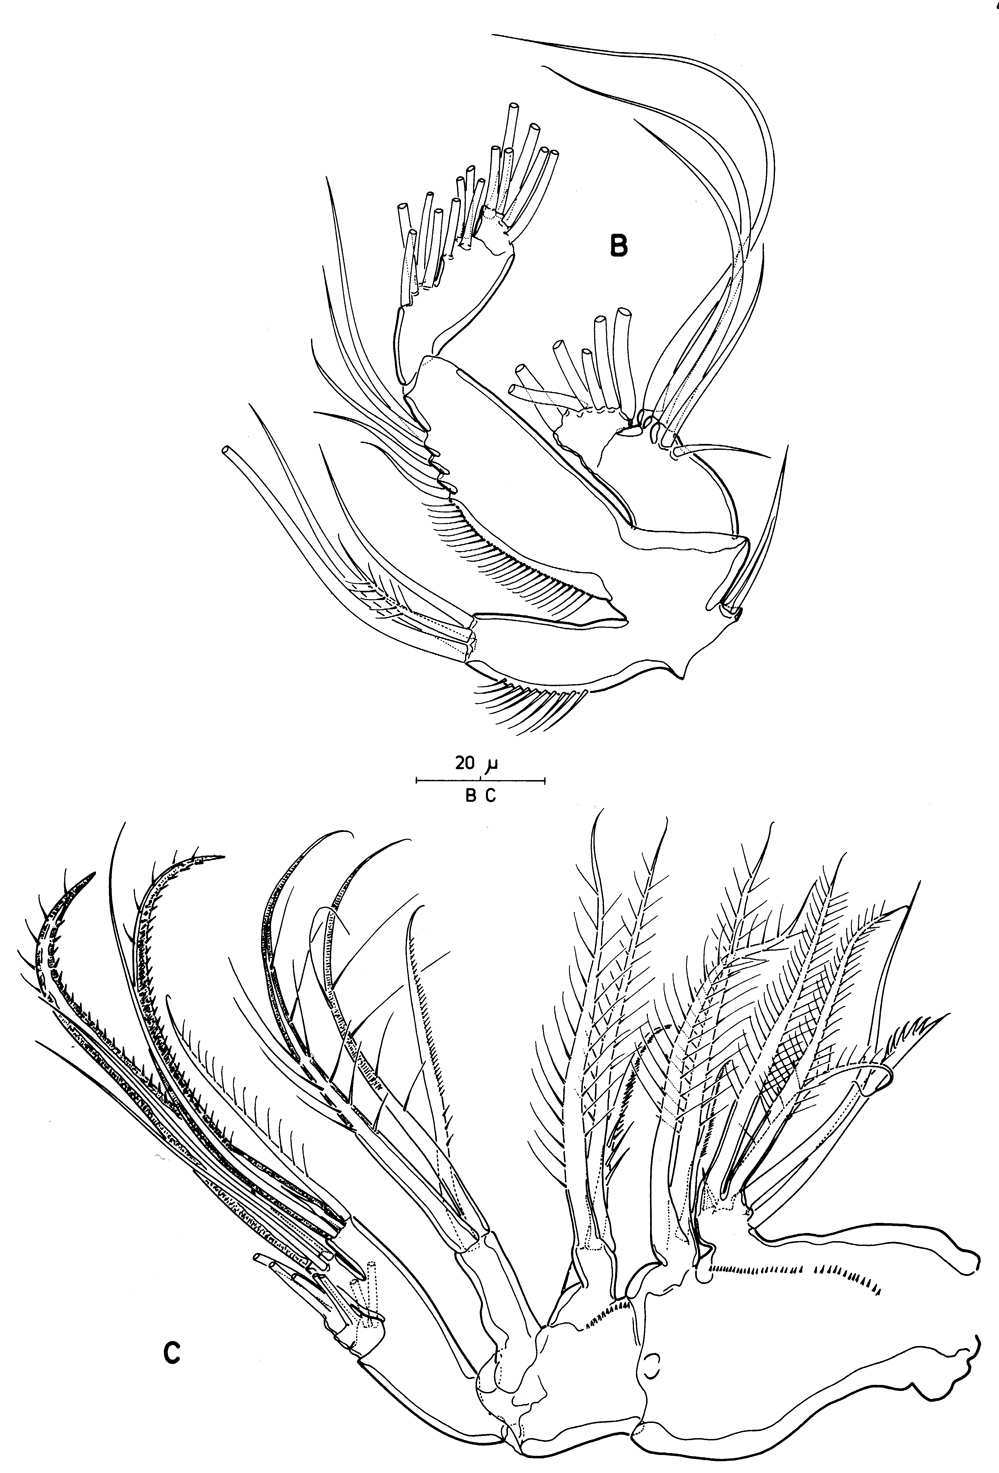 Espèce Pseudocyclops bahamensis - Planche 12 de figures morphologiques